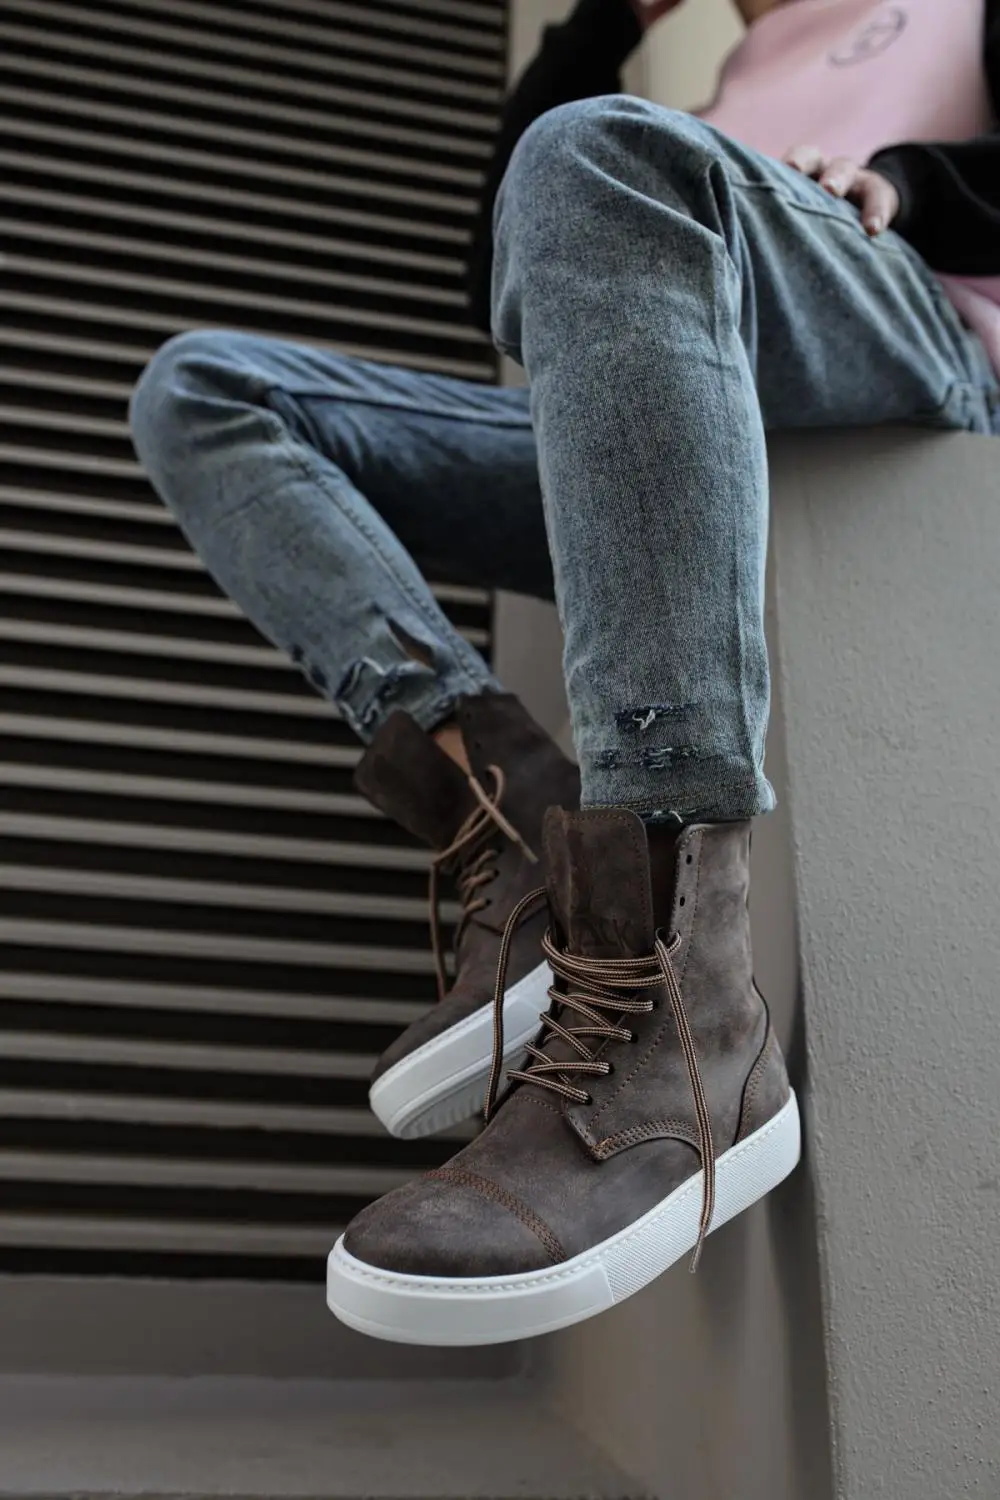 

Ботинки Knack 022 мужские спортивные, высокие модные повседневные ботинки на шнуровке, с белой подошвой, коричневые (без кожи), для зимы